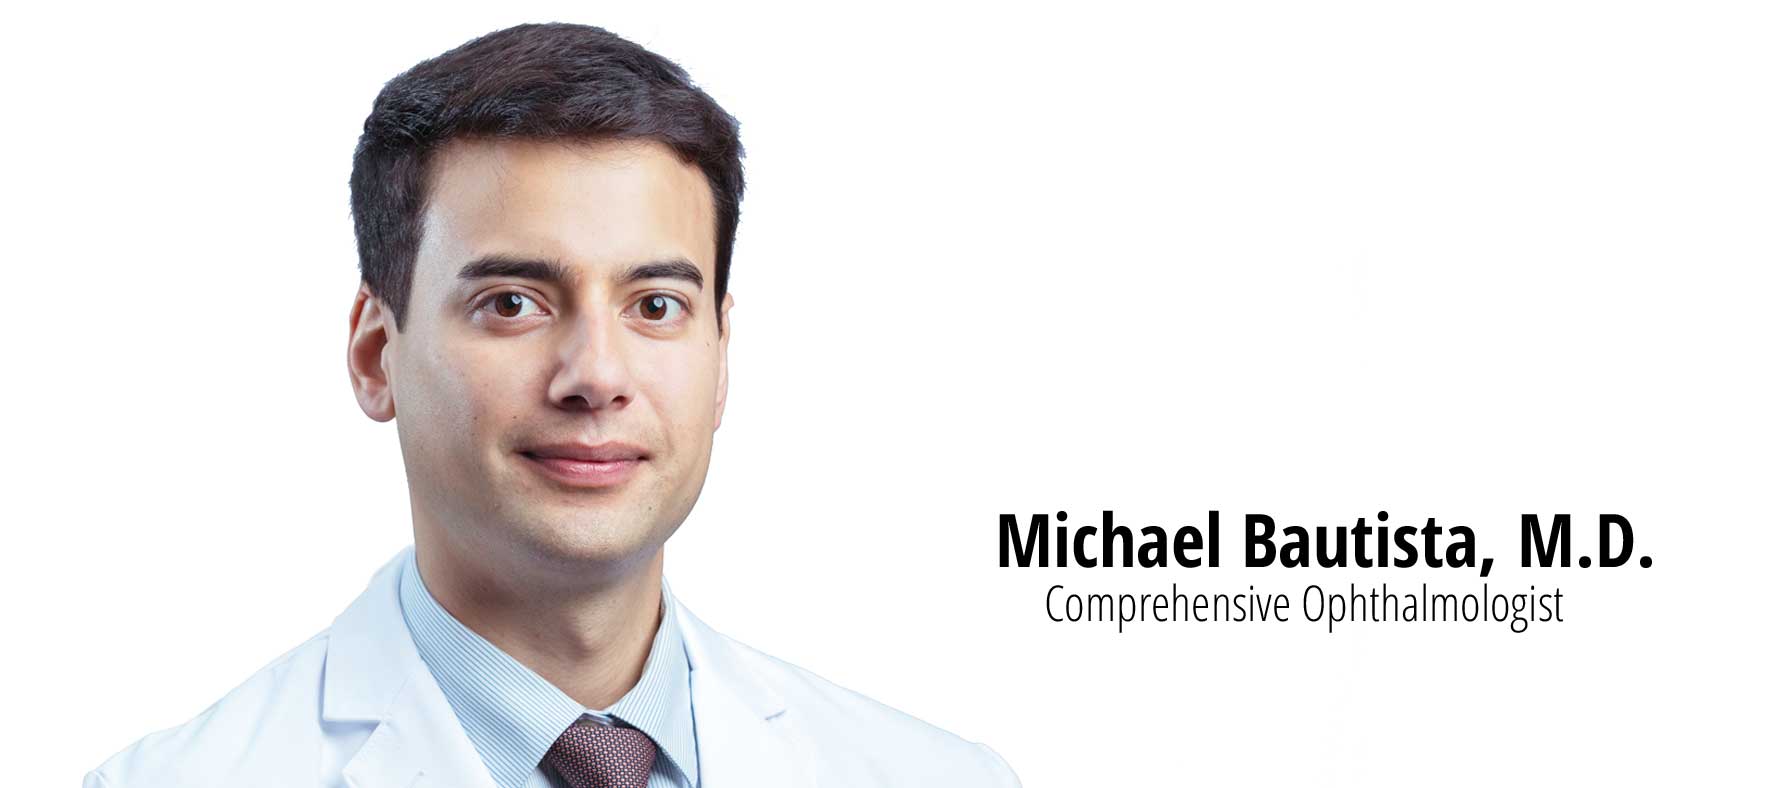 Michael Bautista, M.D.